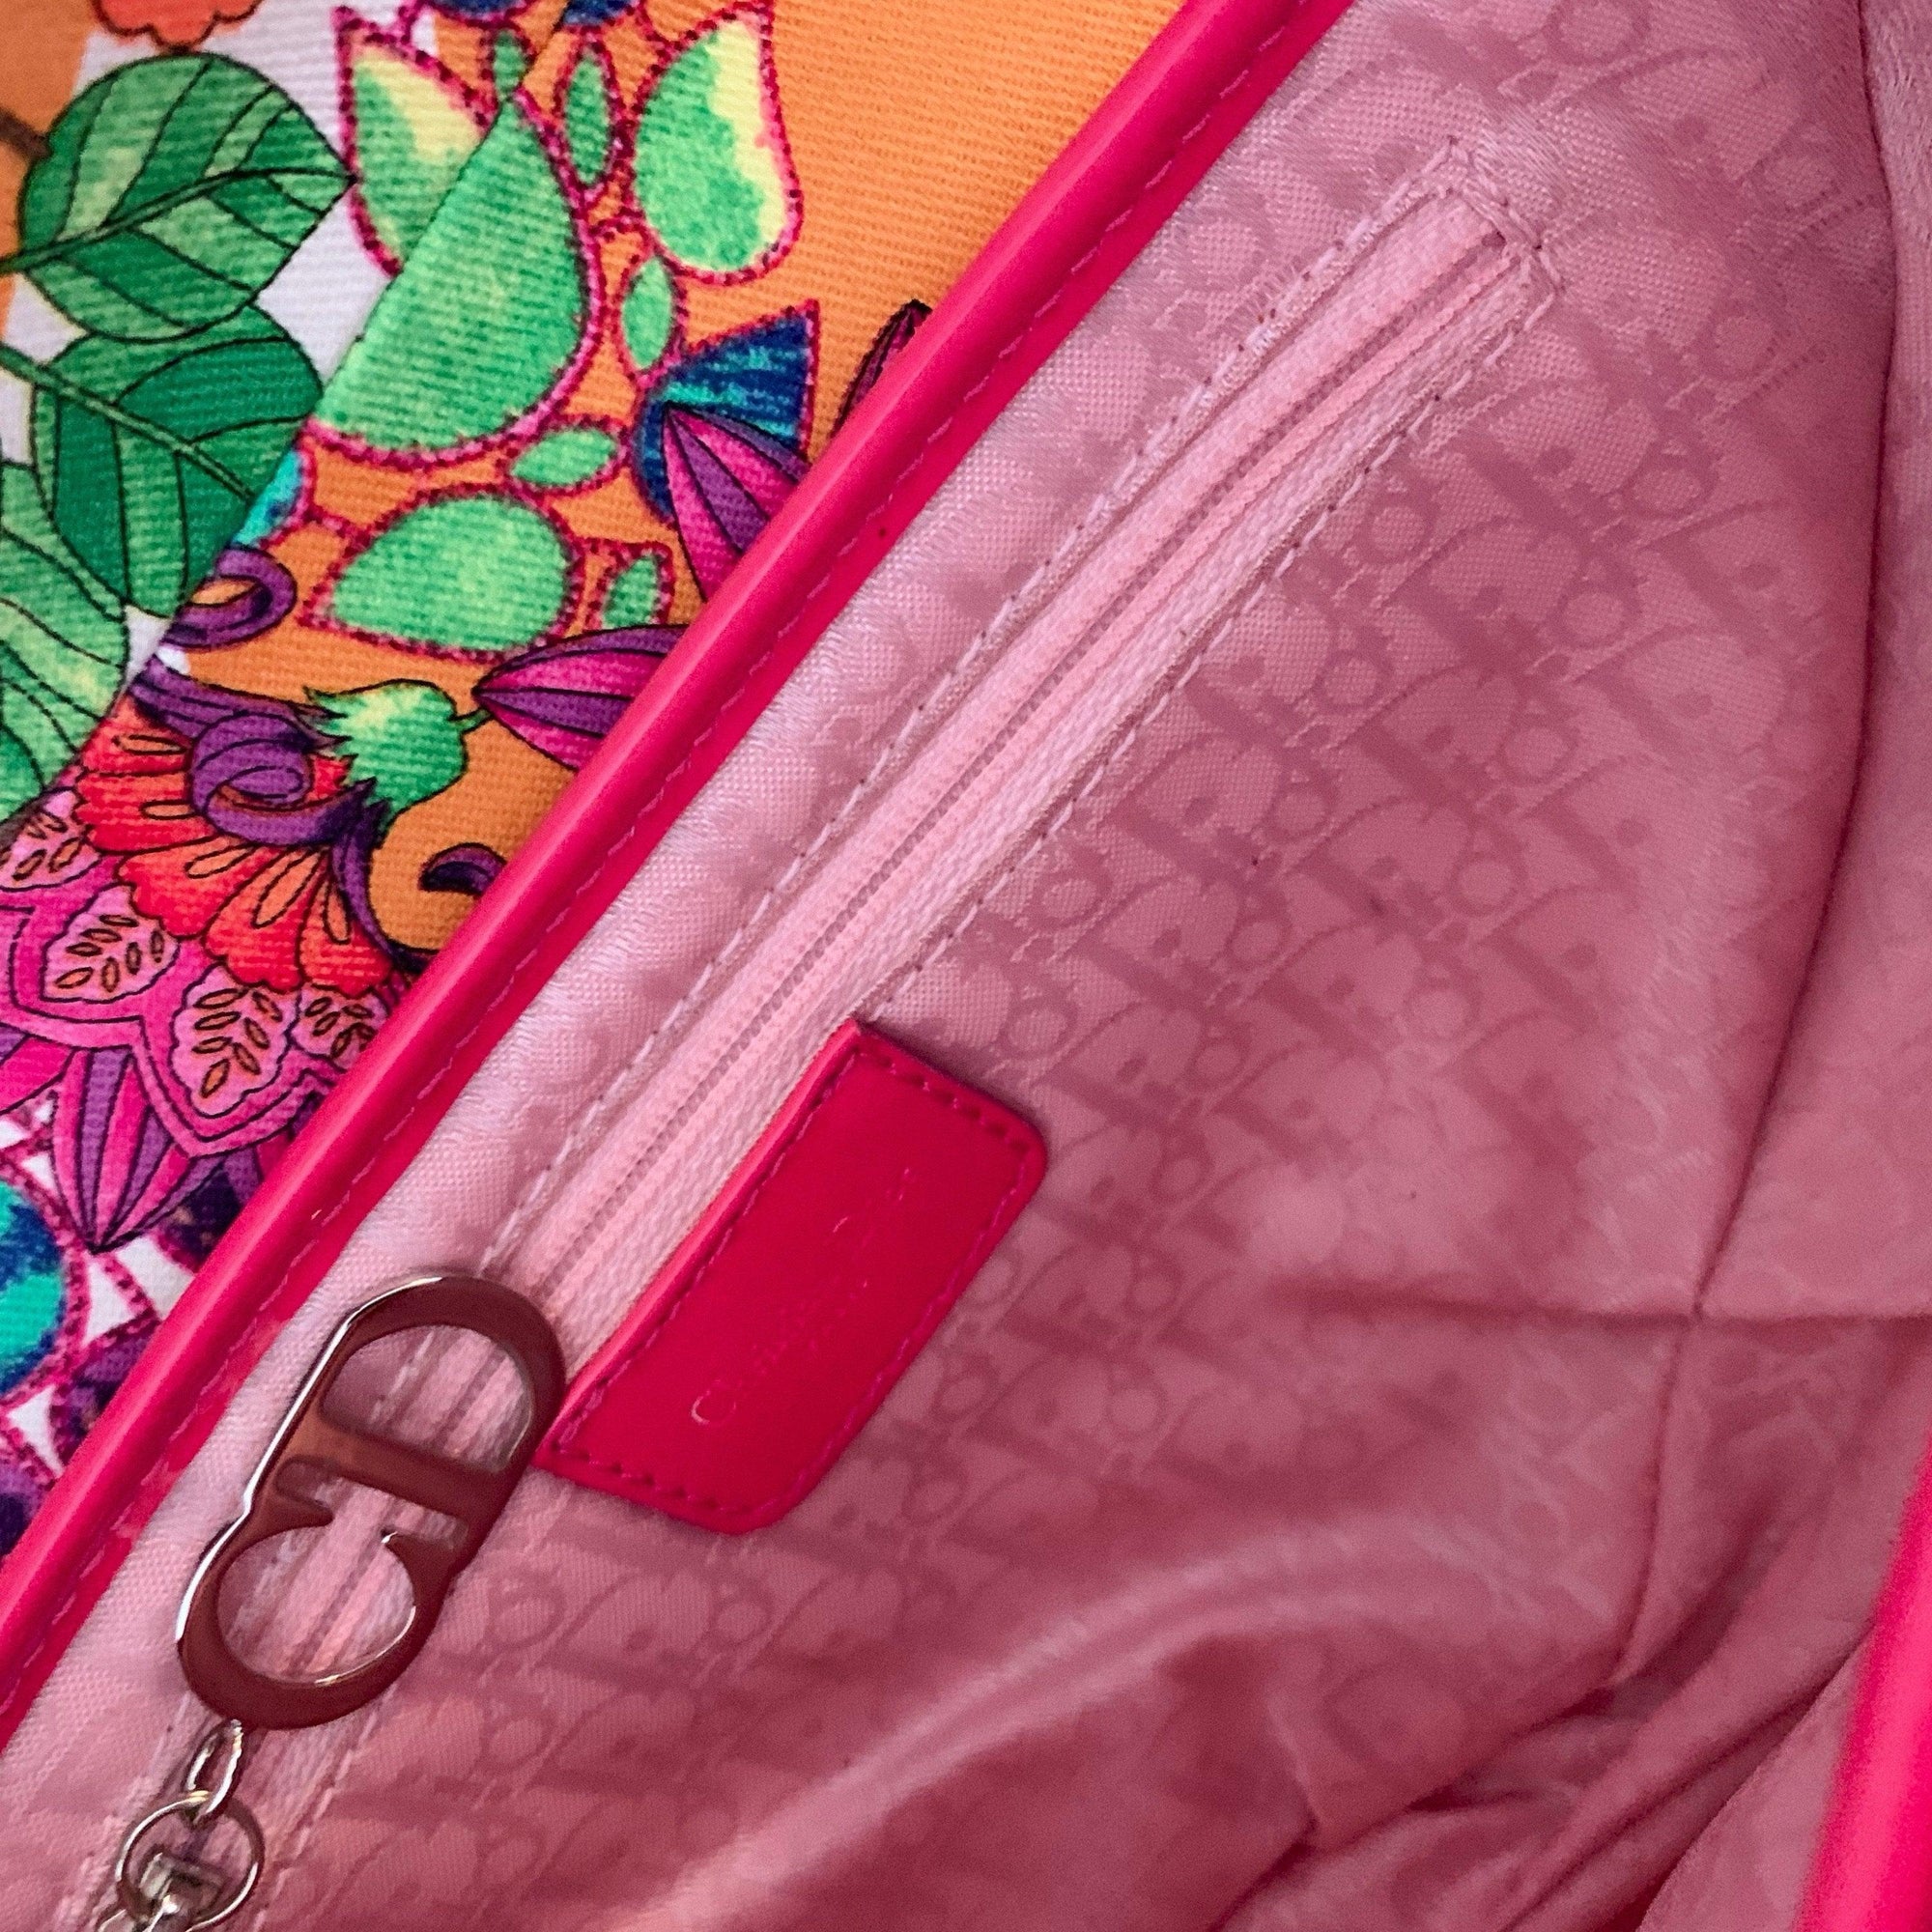 Dior Multicolor Floral Saddle Bag - Handbags